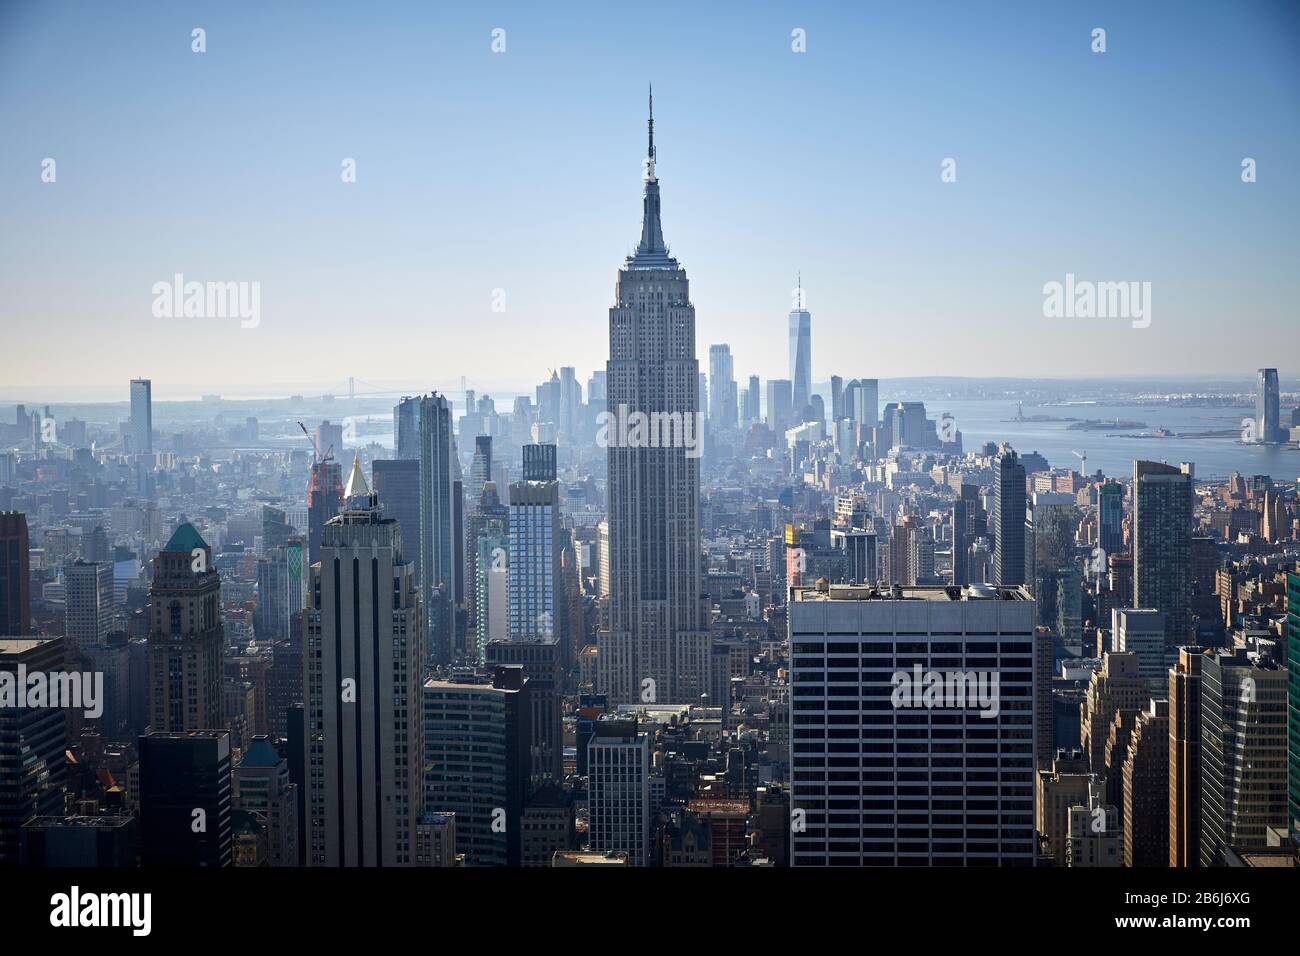 Skyline di New York, Manhattan, con l'Empire state Building che guarda in modo prominente al centro Foto Stock